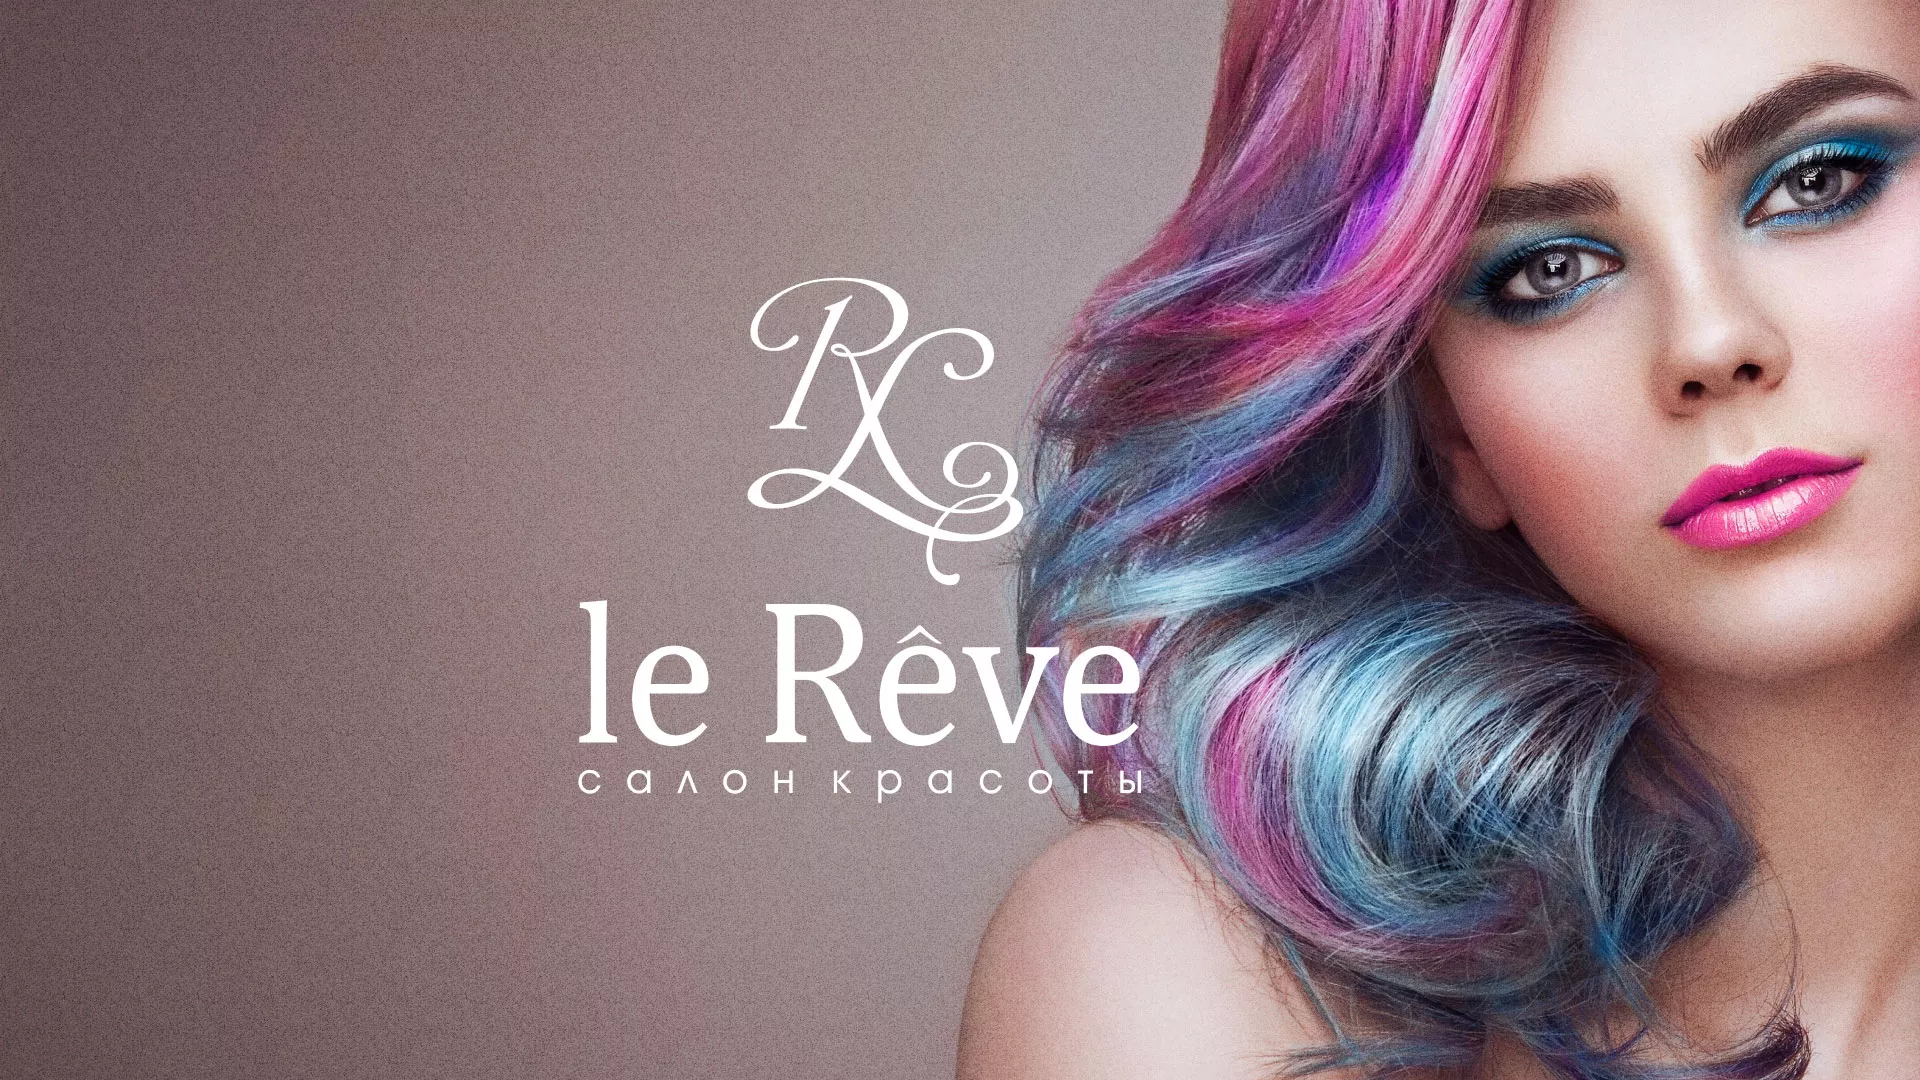 Создание сайта для салона красоты «Le Reve» в Южноуральске